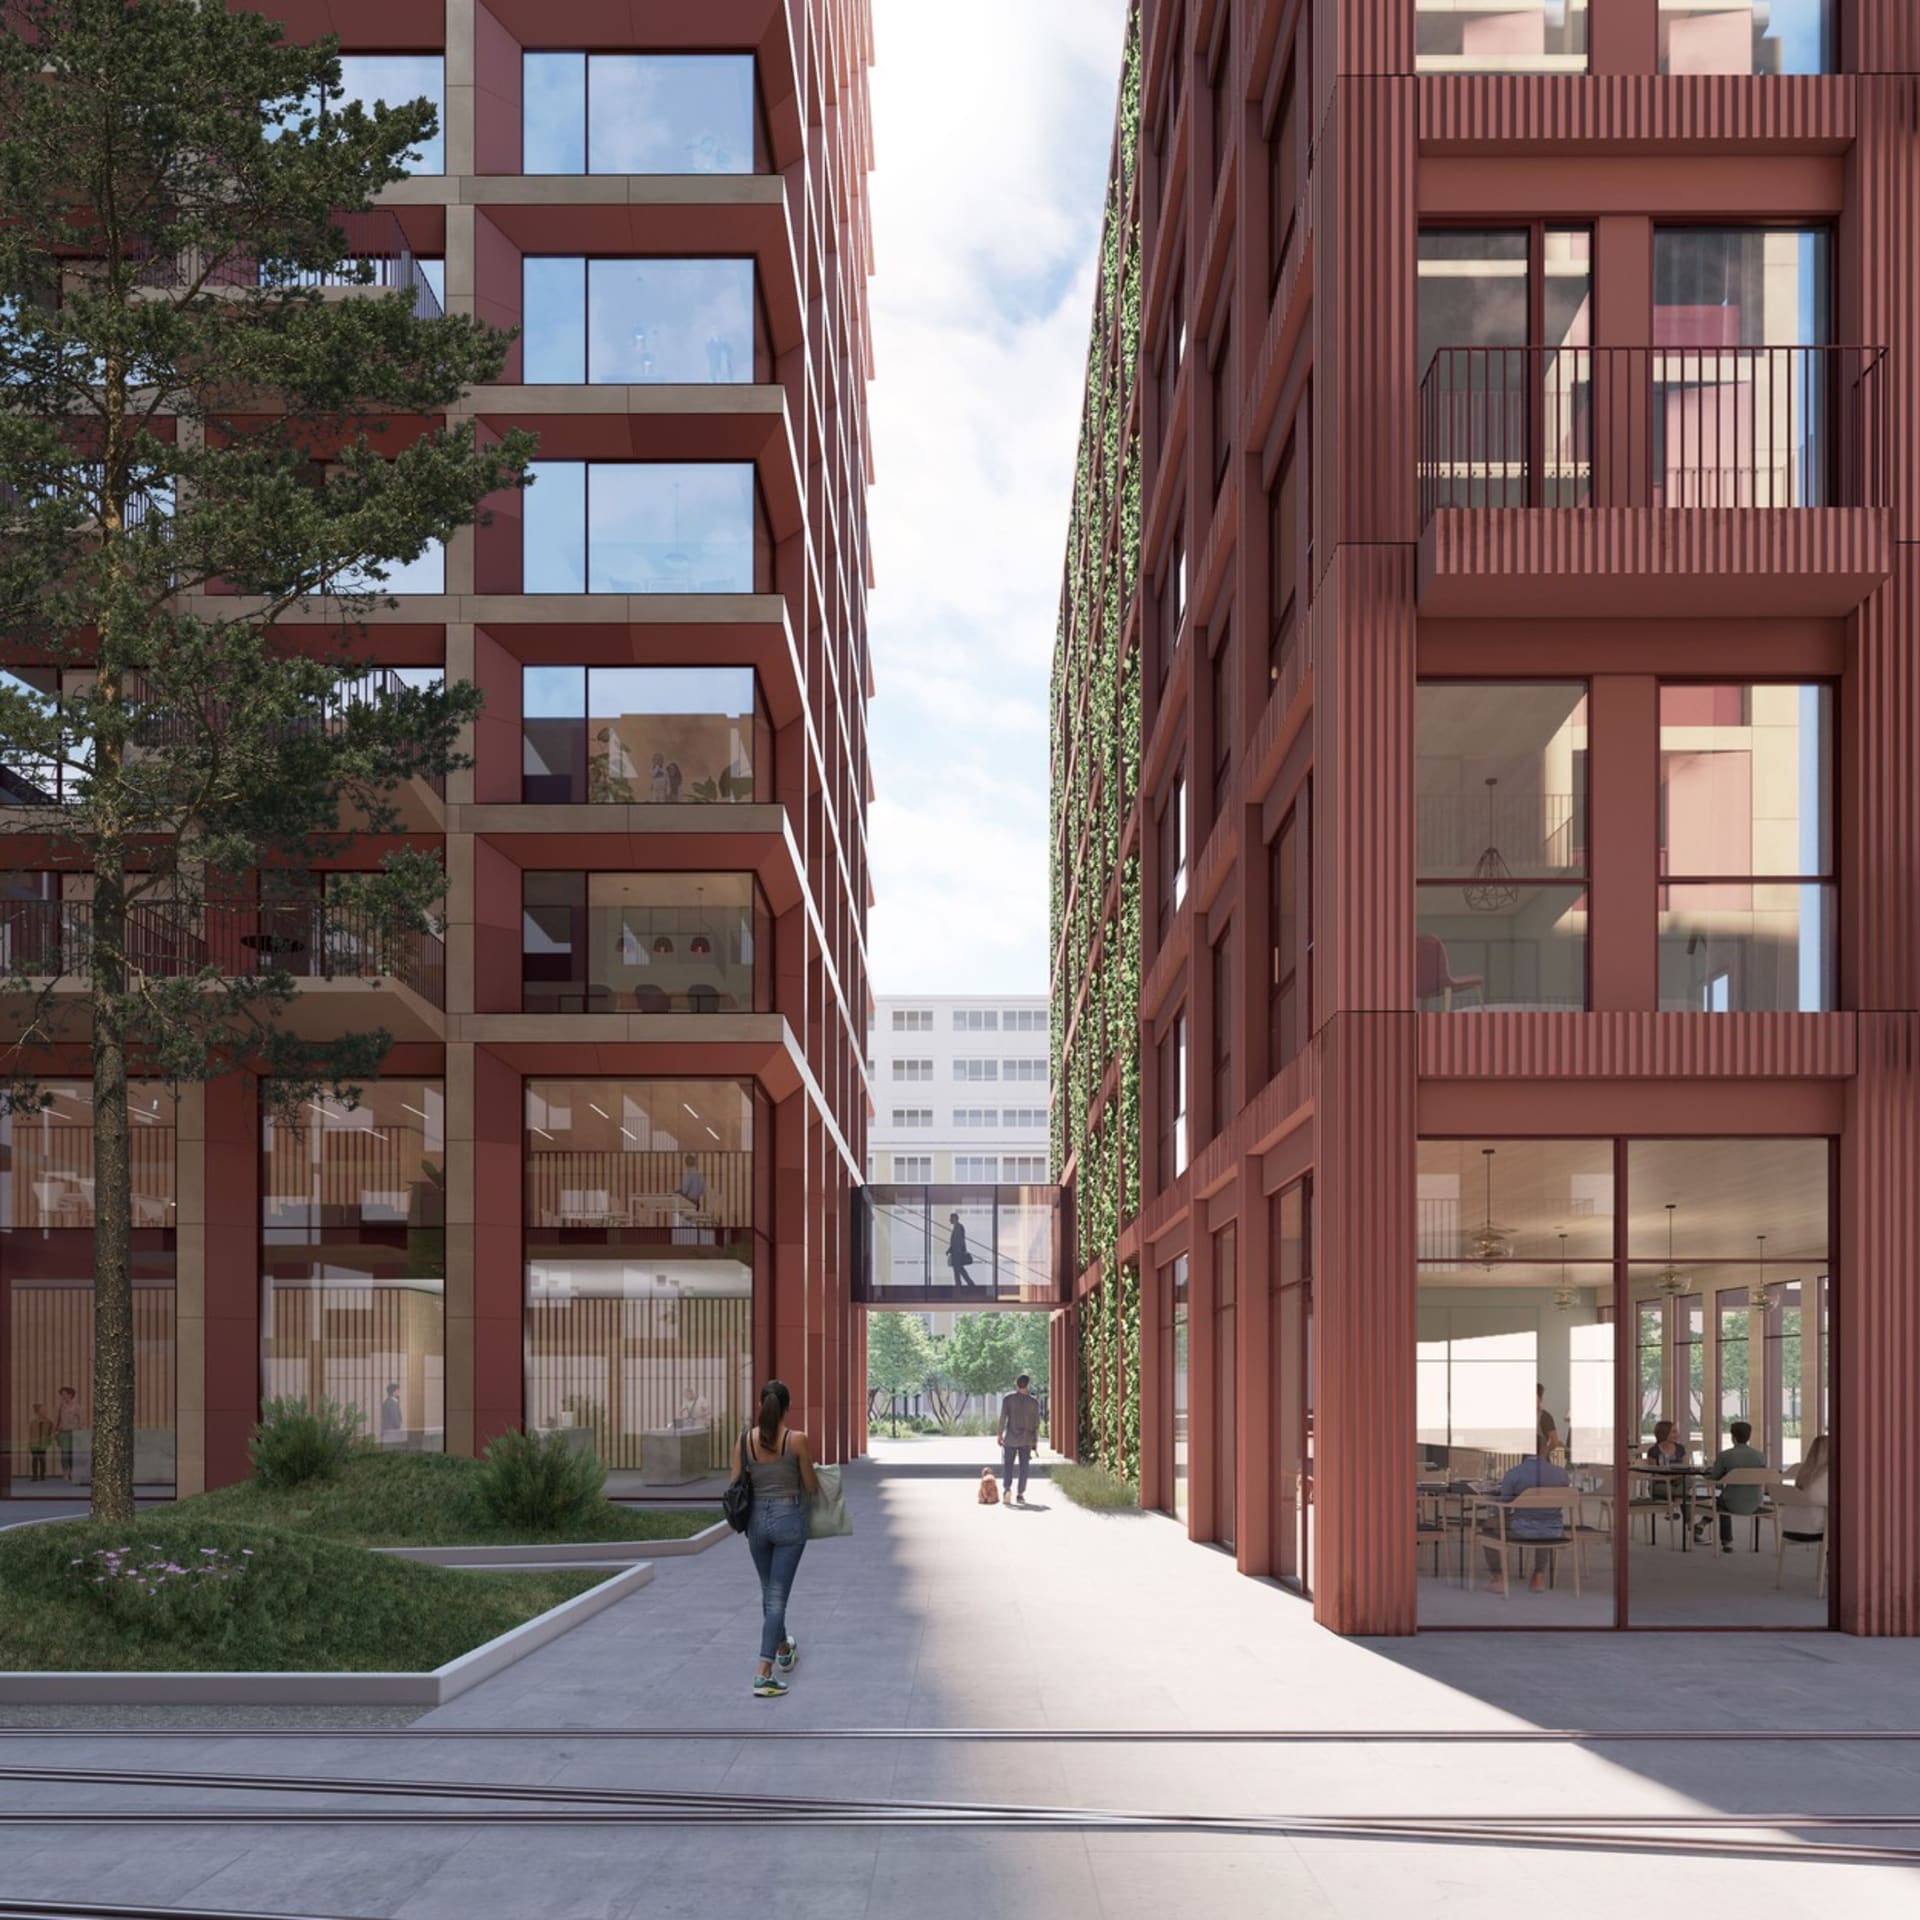 Dřevostavba vysoká 100 metrů bude součástí obytného komplexu, který navrhli architekti z dánské kanceláře Schmidt Hammer Lassen Architects (SHL).